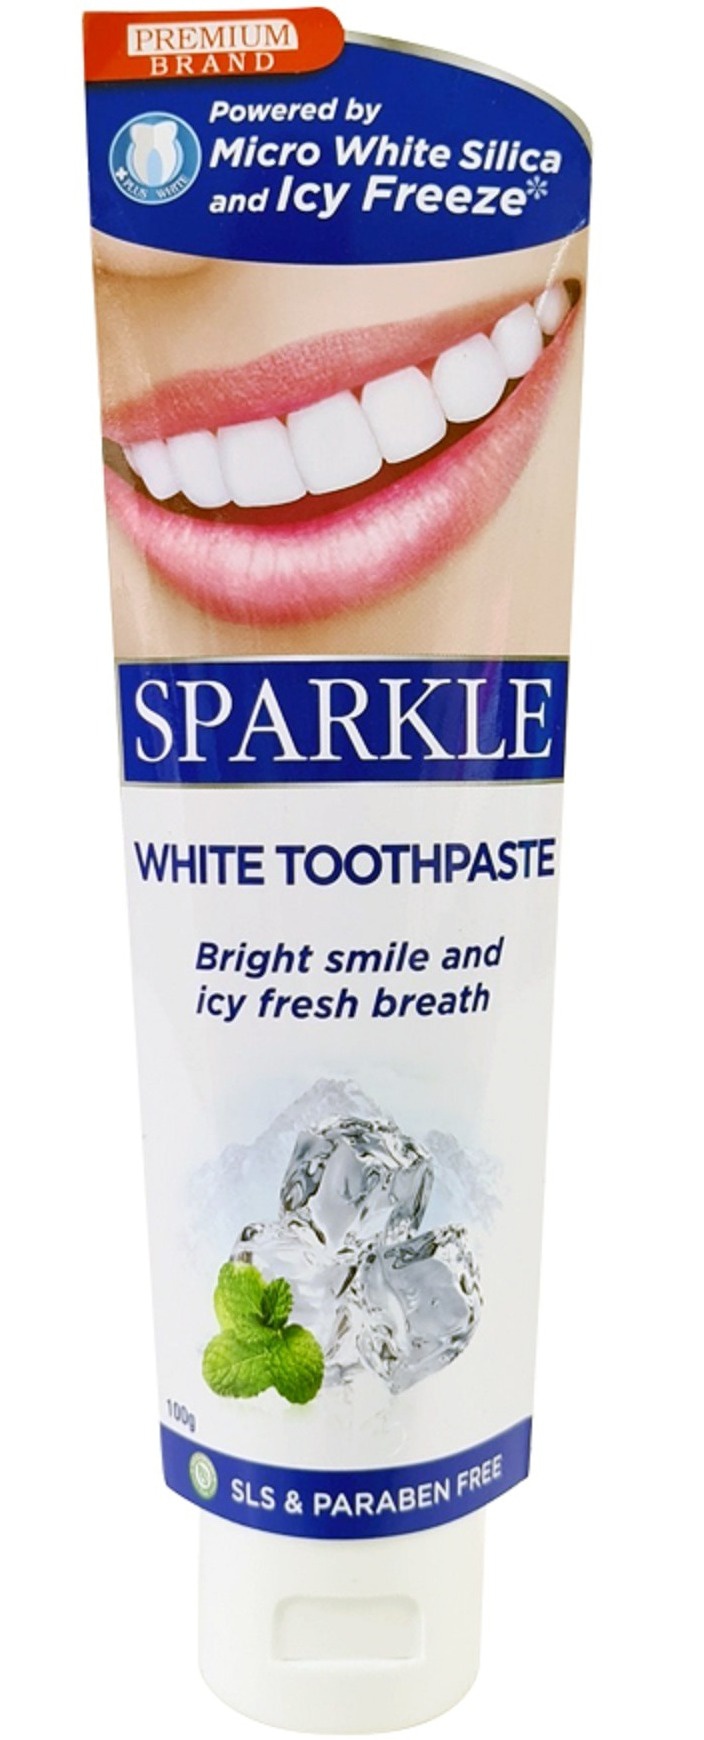 SPARKLE White Toothpaste